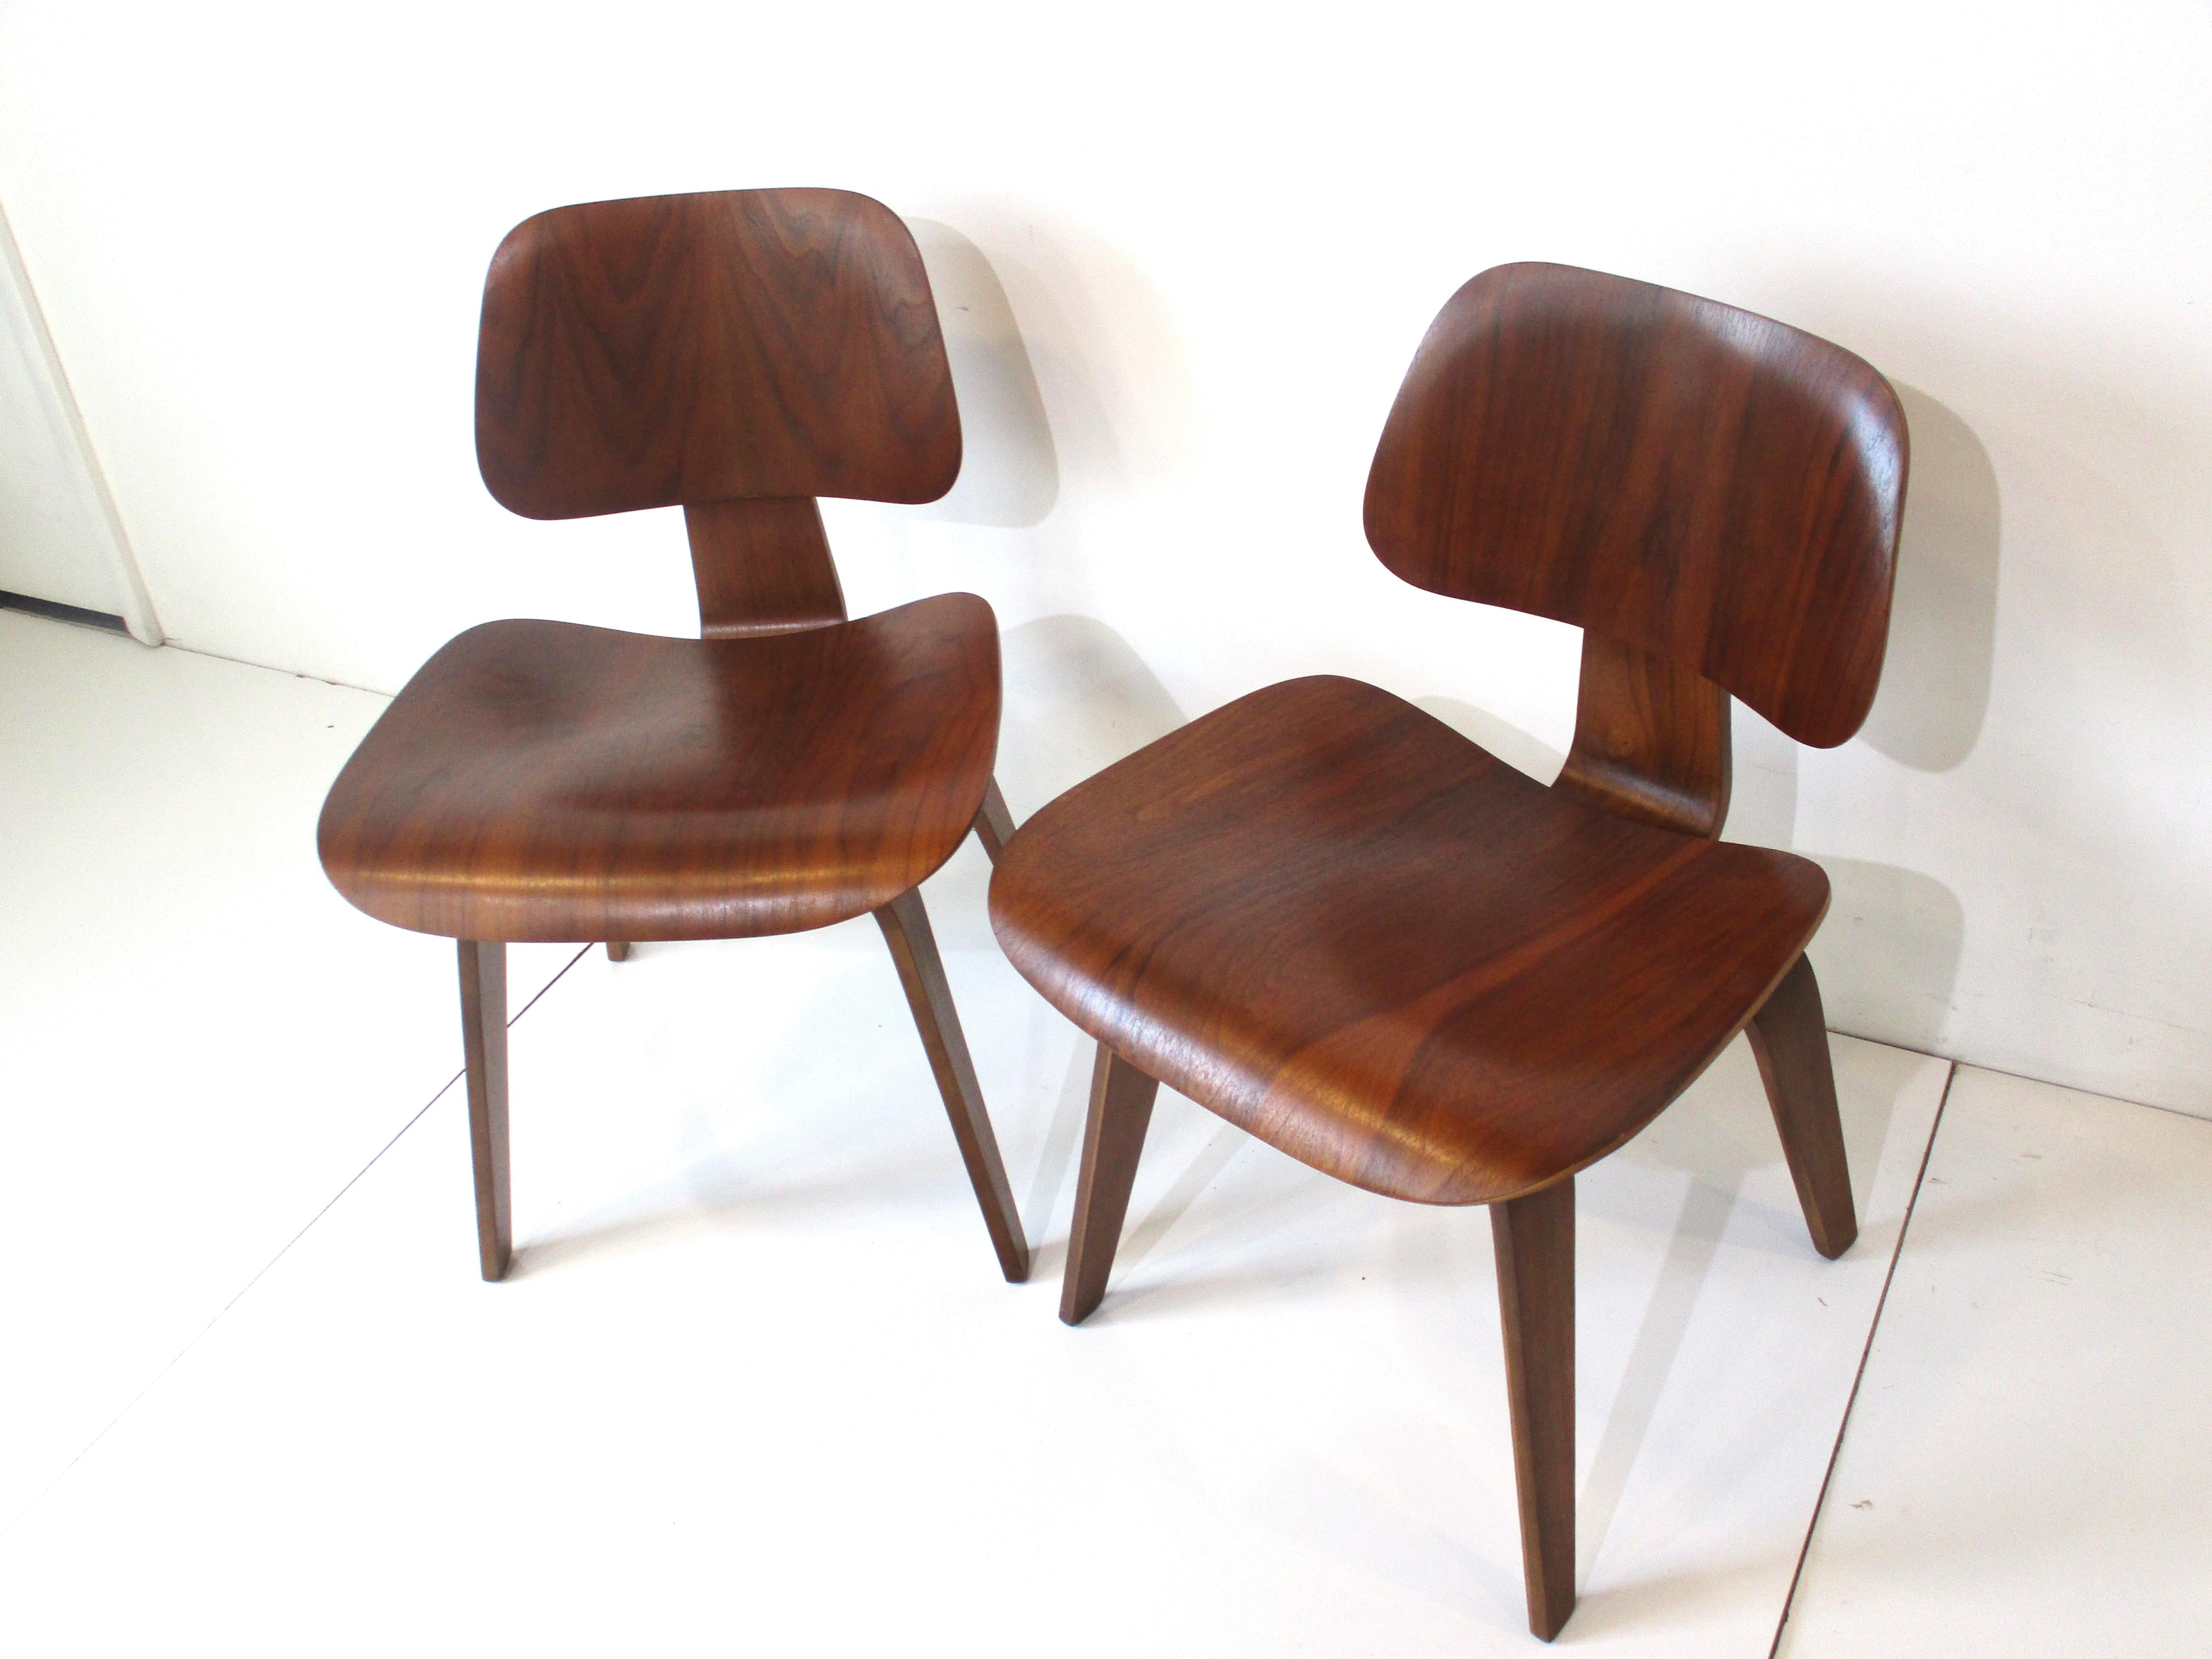 Ein Paar sehr gut gemaserter Beistellstühle aus gebogenem Nussbaumsperrholz, entworfen von dem legendären Team Ray und Charles Eames. Diese skulpturalen Stühle sind Teil der Möbelgeschichte, die nach dem Zweiten Weltkrieg begann und in der